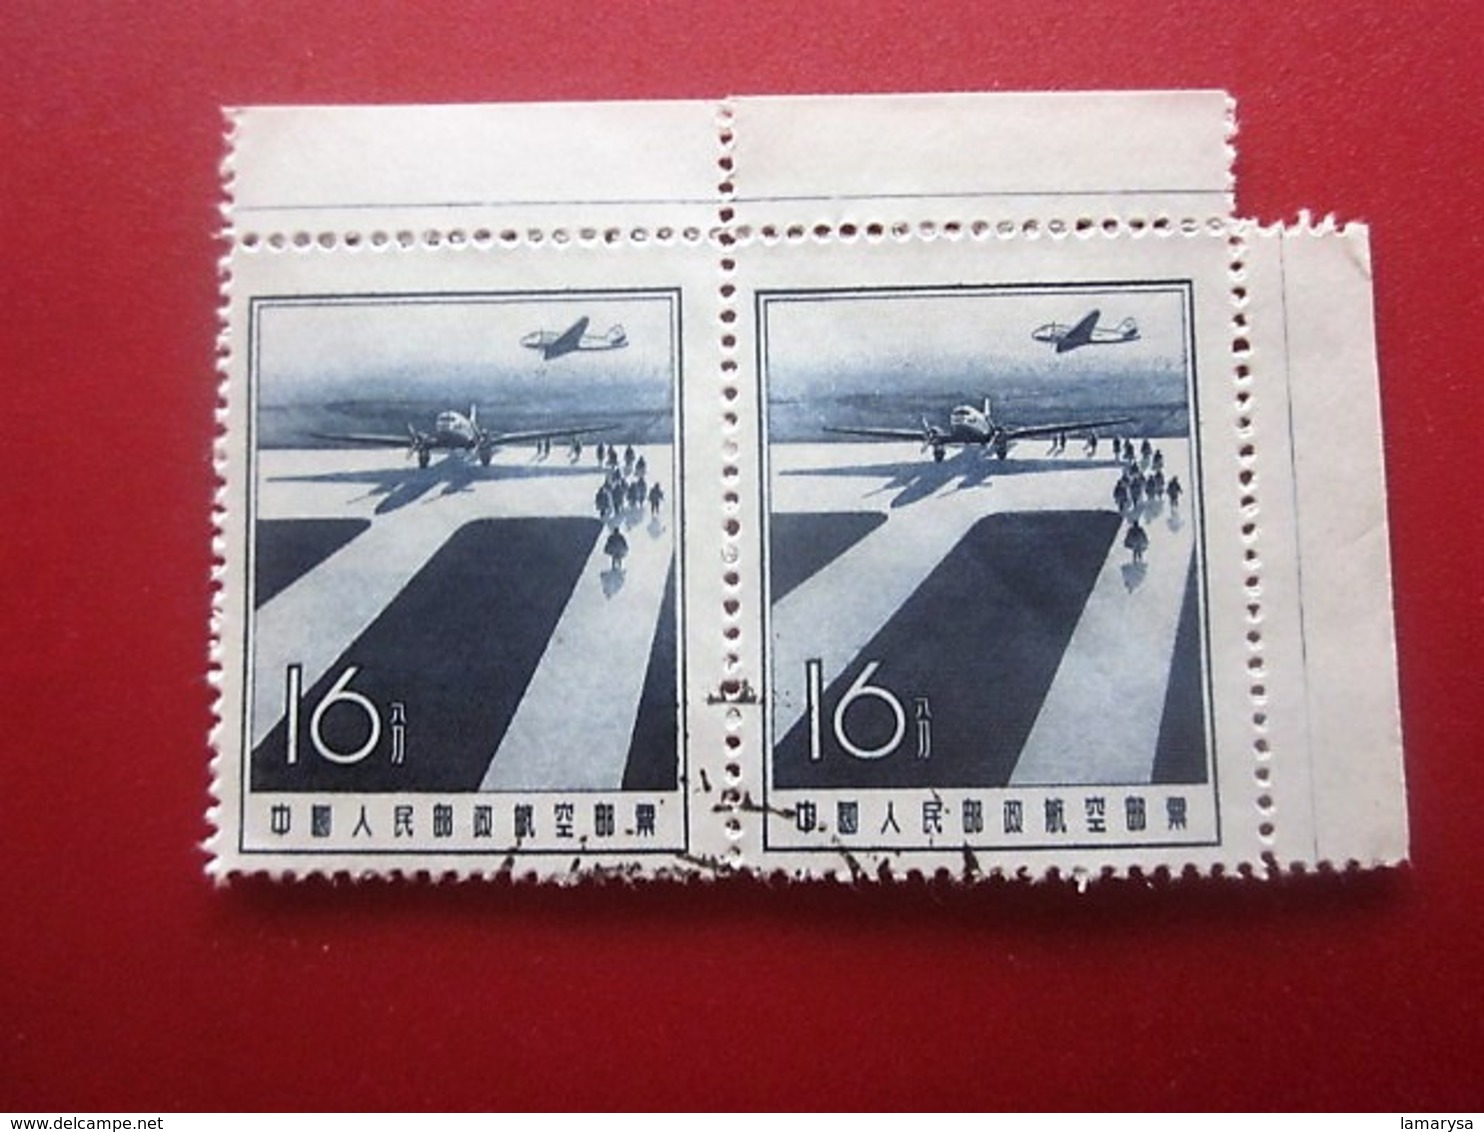 Chine Bloc 2 Timbres-Stamps-République Populaire-Poste Aérienne-Asia China-Popular Republic Airmail-亚洲中国第4区邮票热门共和国航空邮件 - Airmail